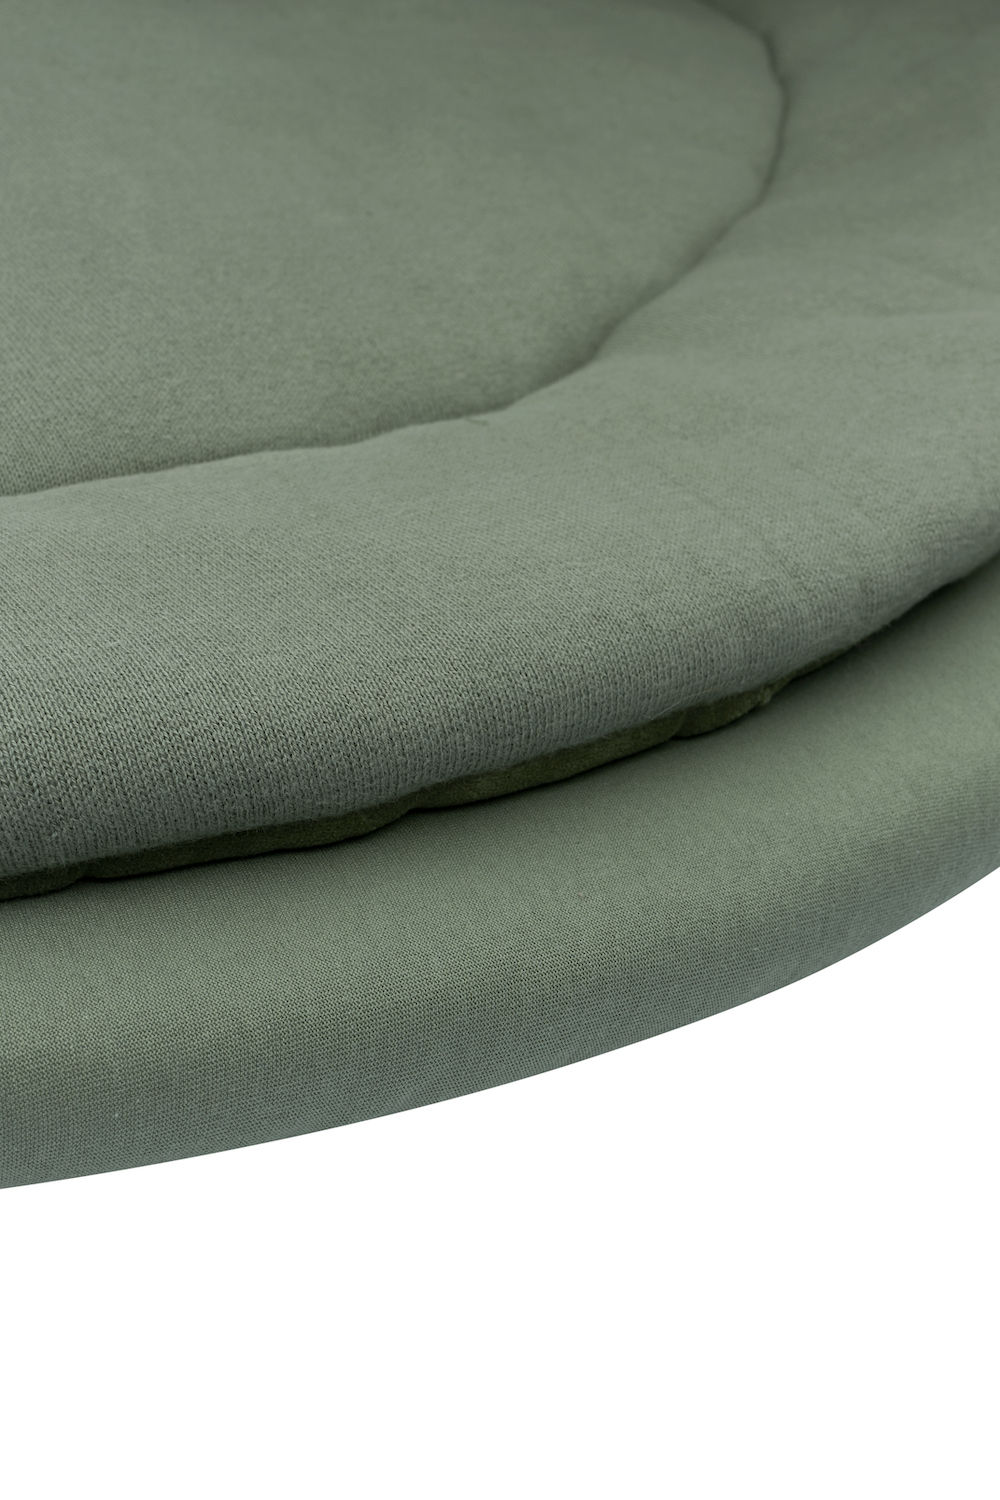 Fitted sheet playpen mattress Uni - forest green - Round 90/95cm